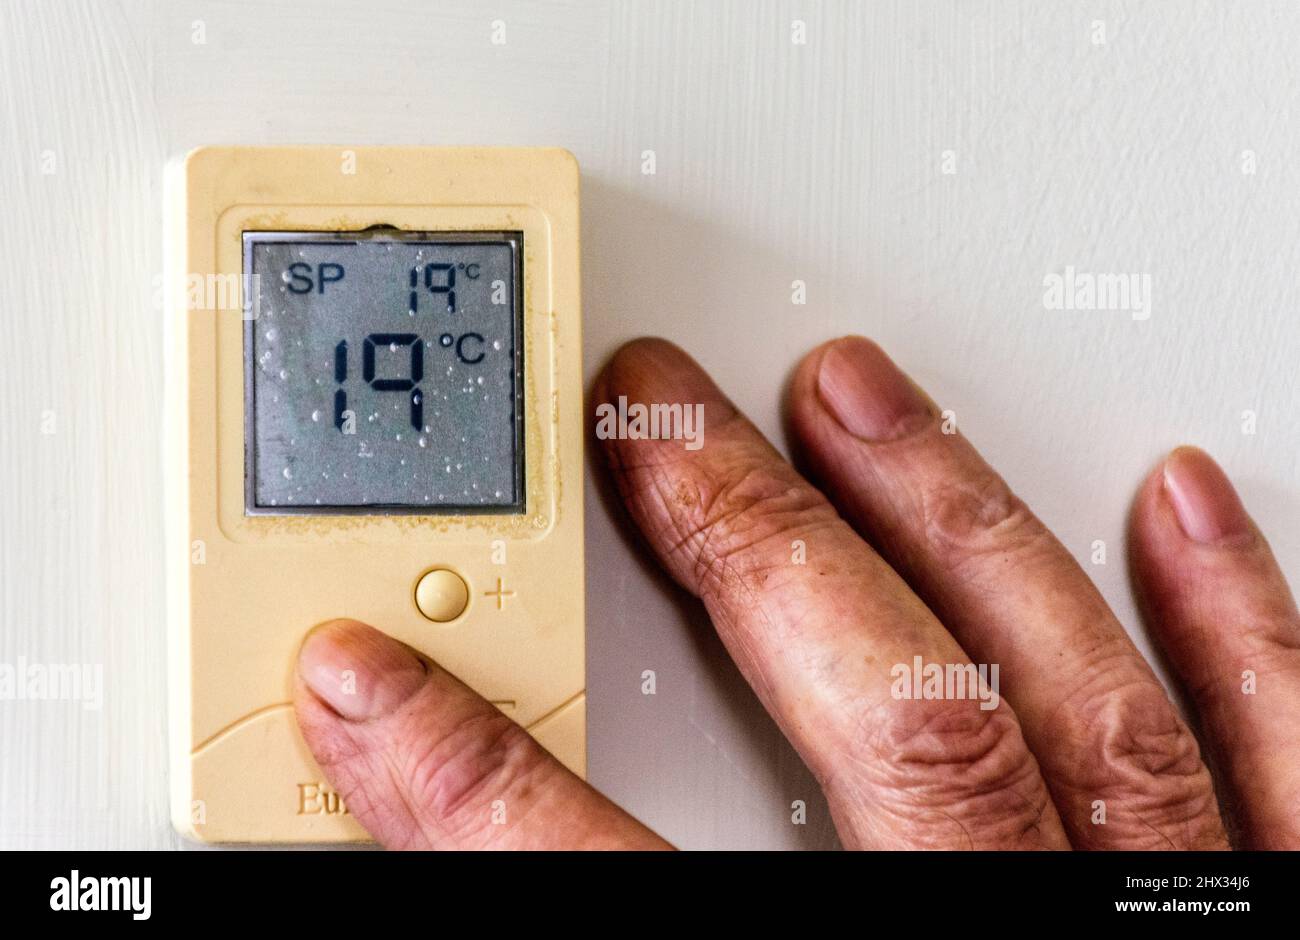 Ancianos, ancianos y ancianos ajustan la temperatura de su casa con un termostato digital a medida que los costos de calefacción se disparan. Foto de stock